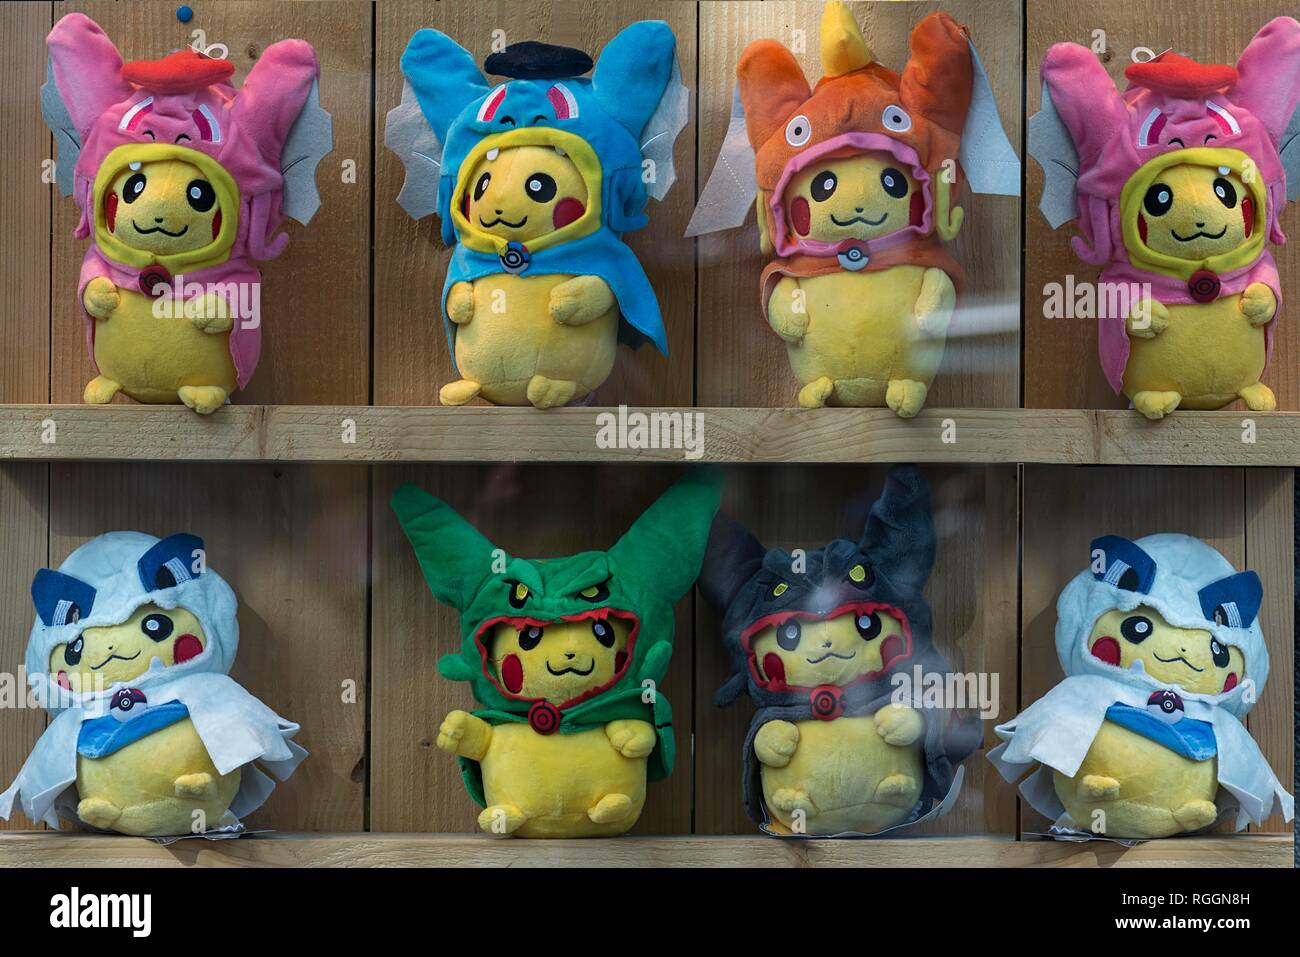 Pikachu, Pokemon muñecos de peluche con diferentes máscaras en un escaparate, Países Bajos Foto de stock